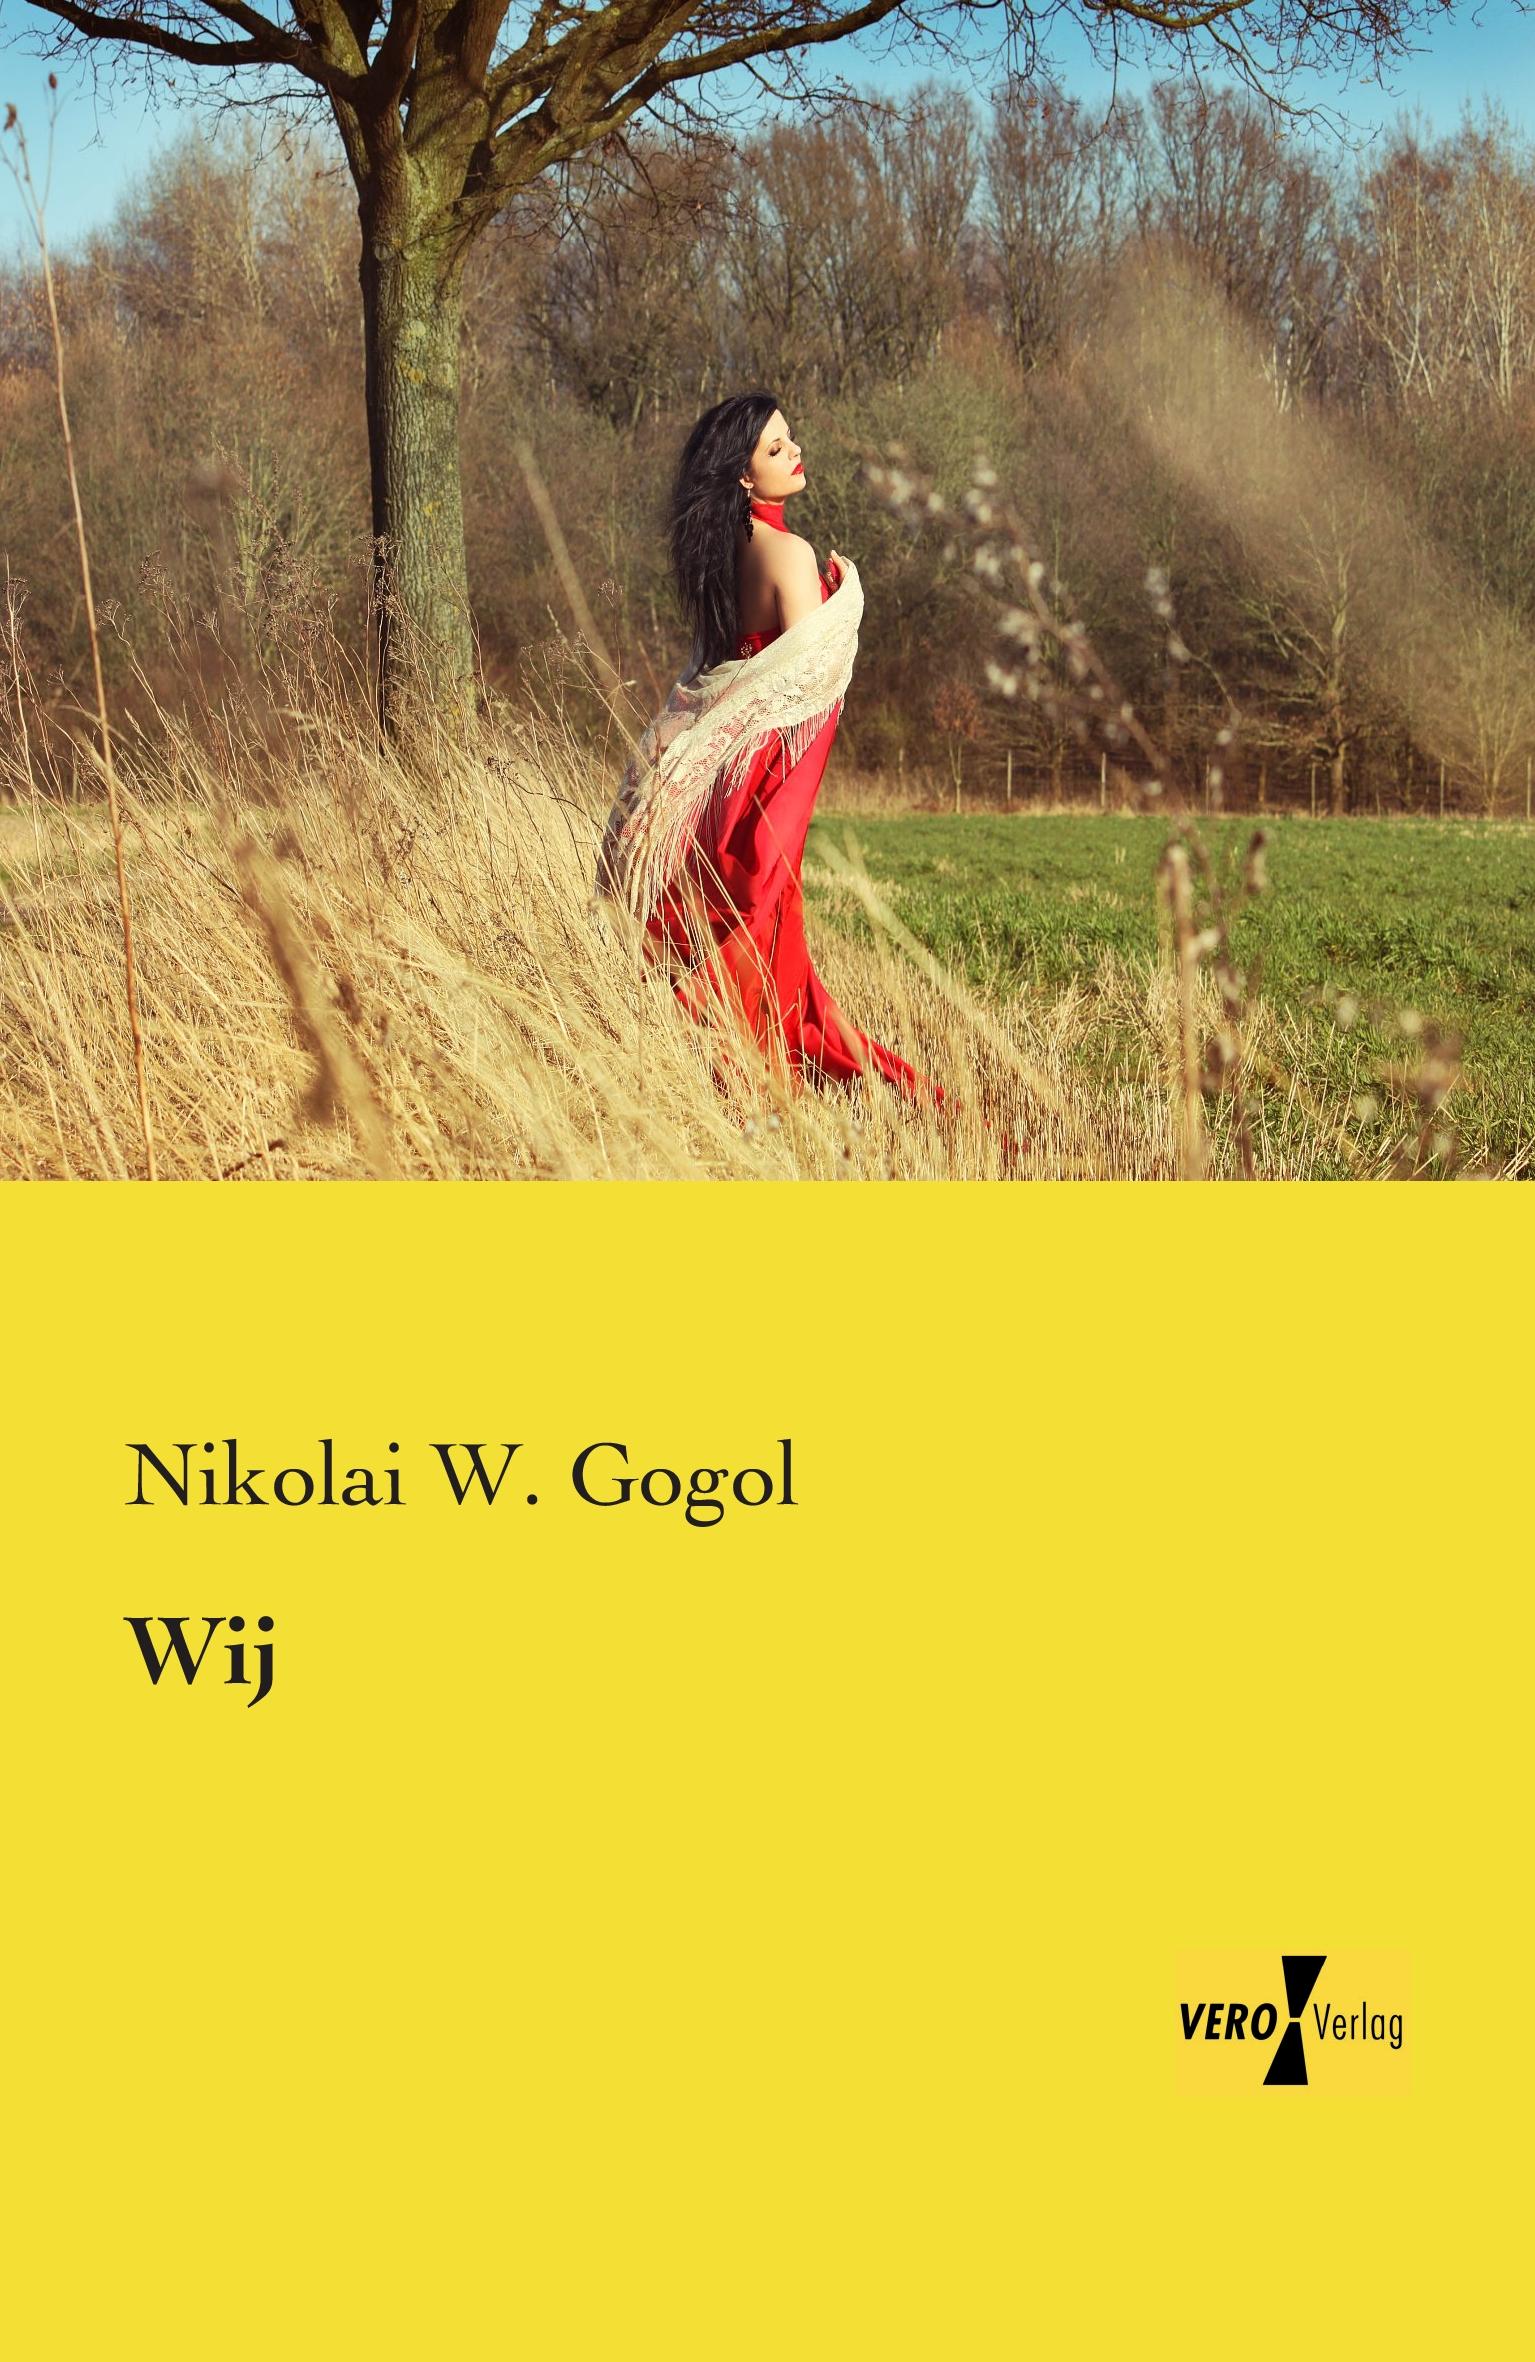 Wij / Nikolai W. Gogol / Taschenbuch / Paperback / 128 S. / Deutsch / 2019 / Vero Verlag / EAN 9783957387394 - Gogol, Nikolai W.